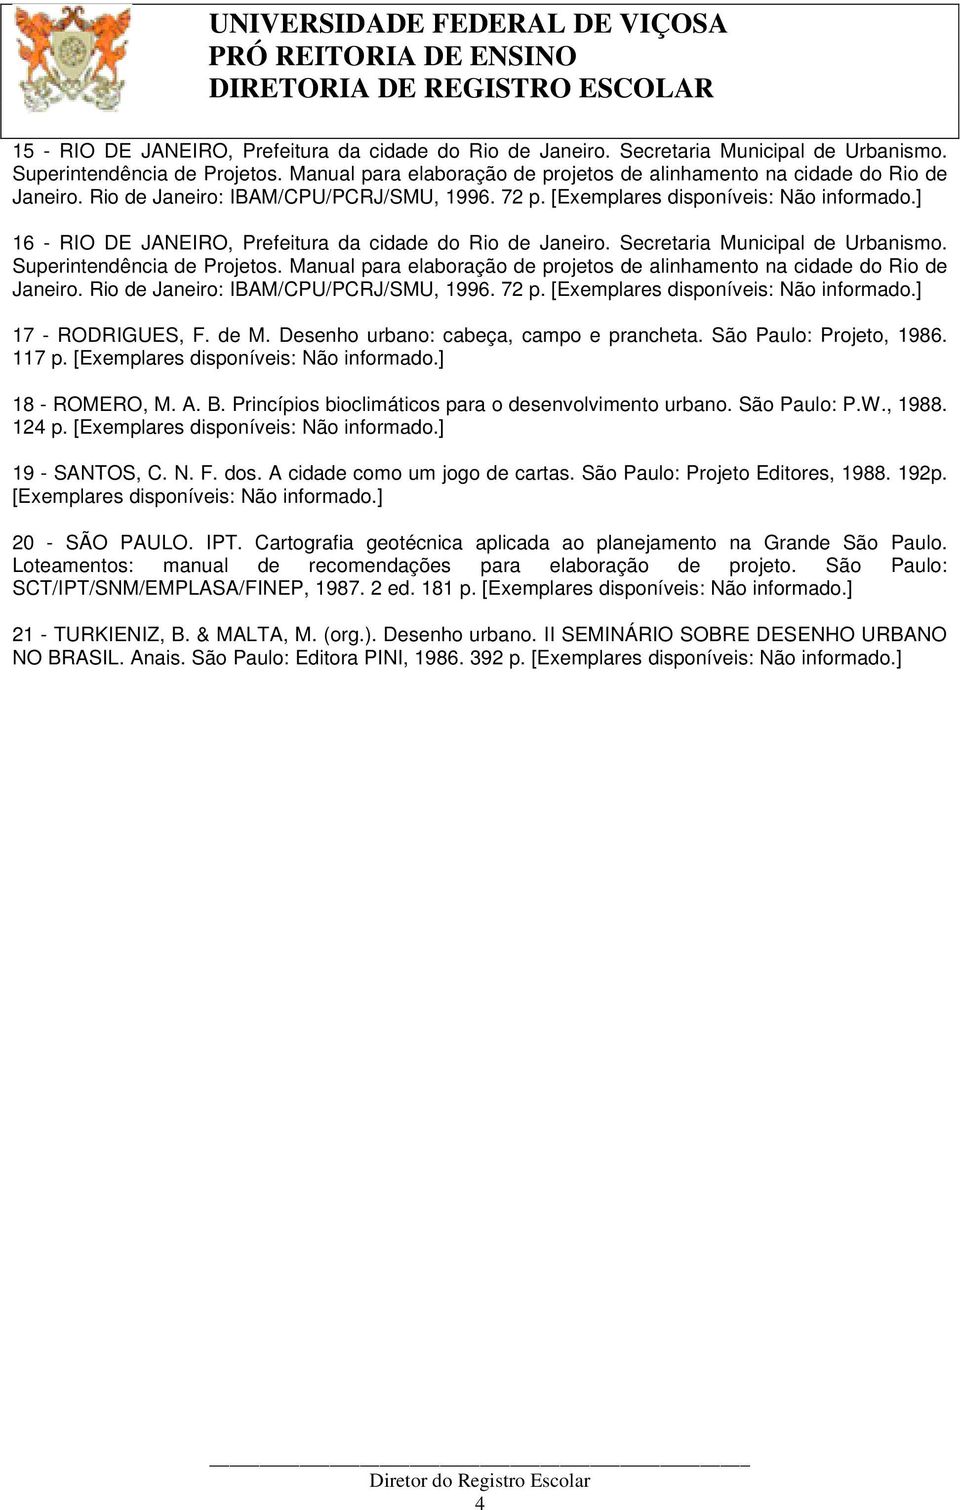 Secretaria Municipal de Urbanismo. Superintendência de Projetos. Manual para elaboração de projetos de alinhamento na cidade do Rio de Janeiro. Rio de Janeiro: IBAM/CPU/PCRJ/SMU, 1996. 72 p.